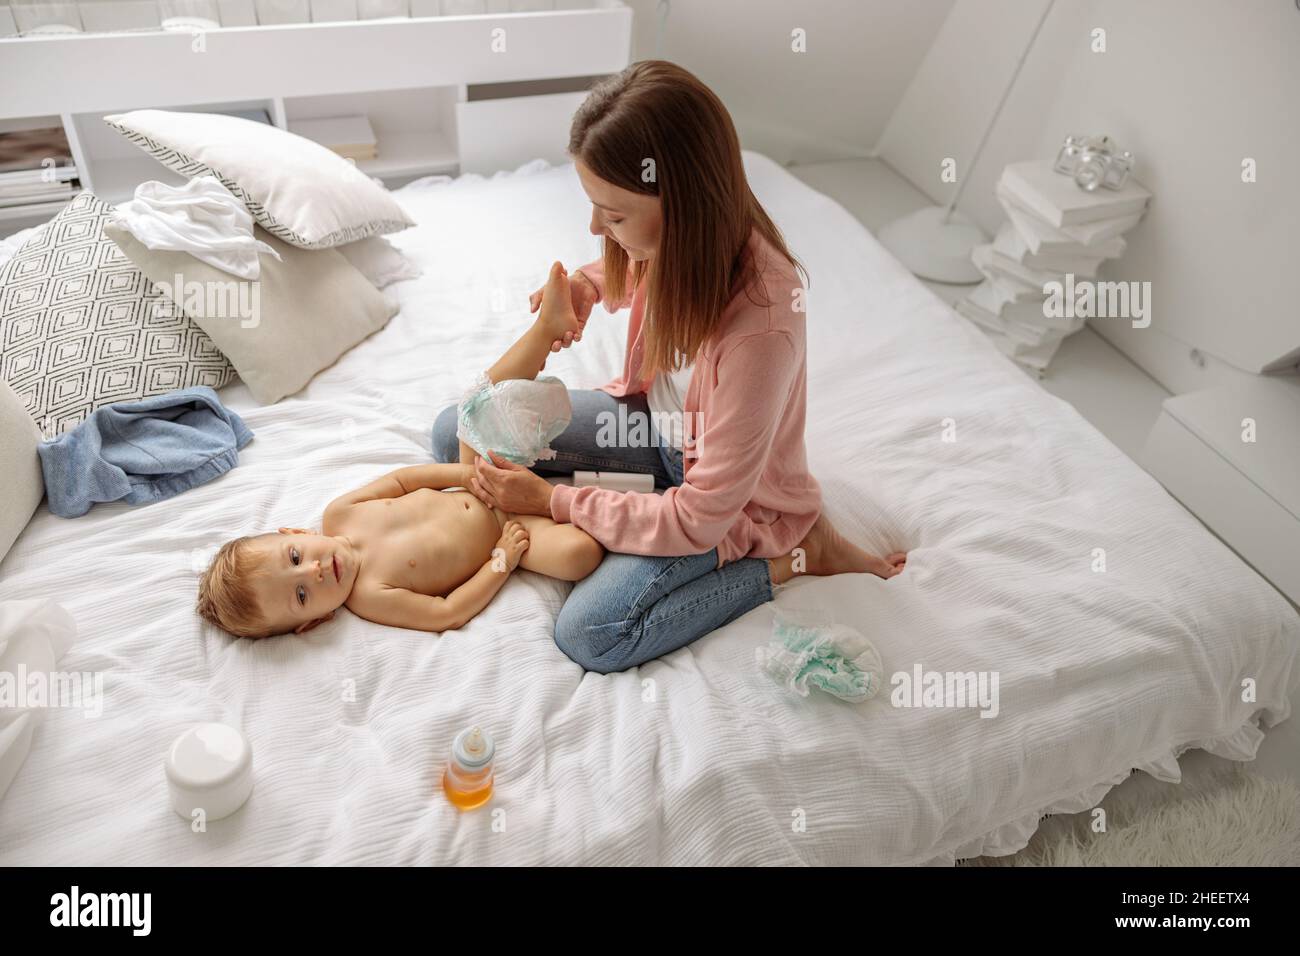 Glückliche Mutter, die im Schlafzimmer die Windel zu ihrem Baby wechselt Stockfoto